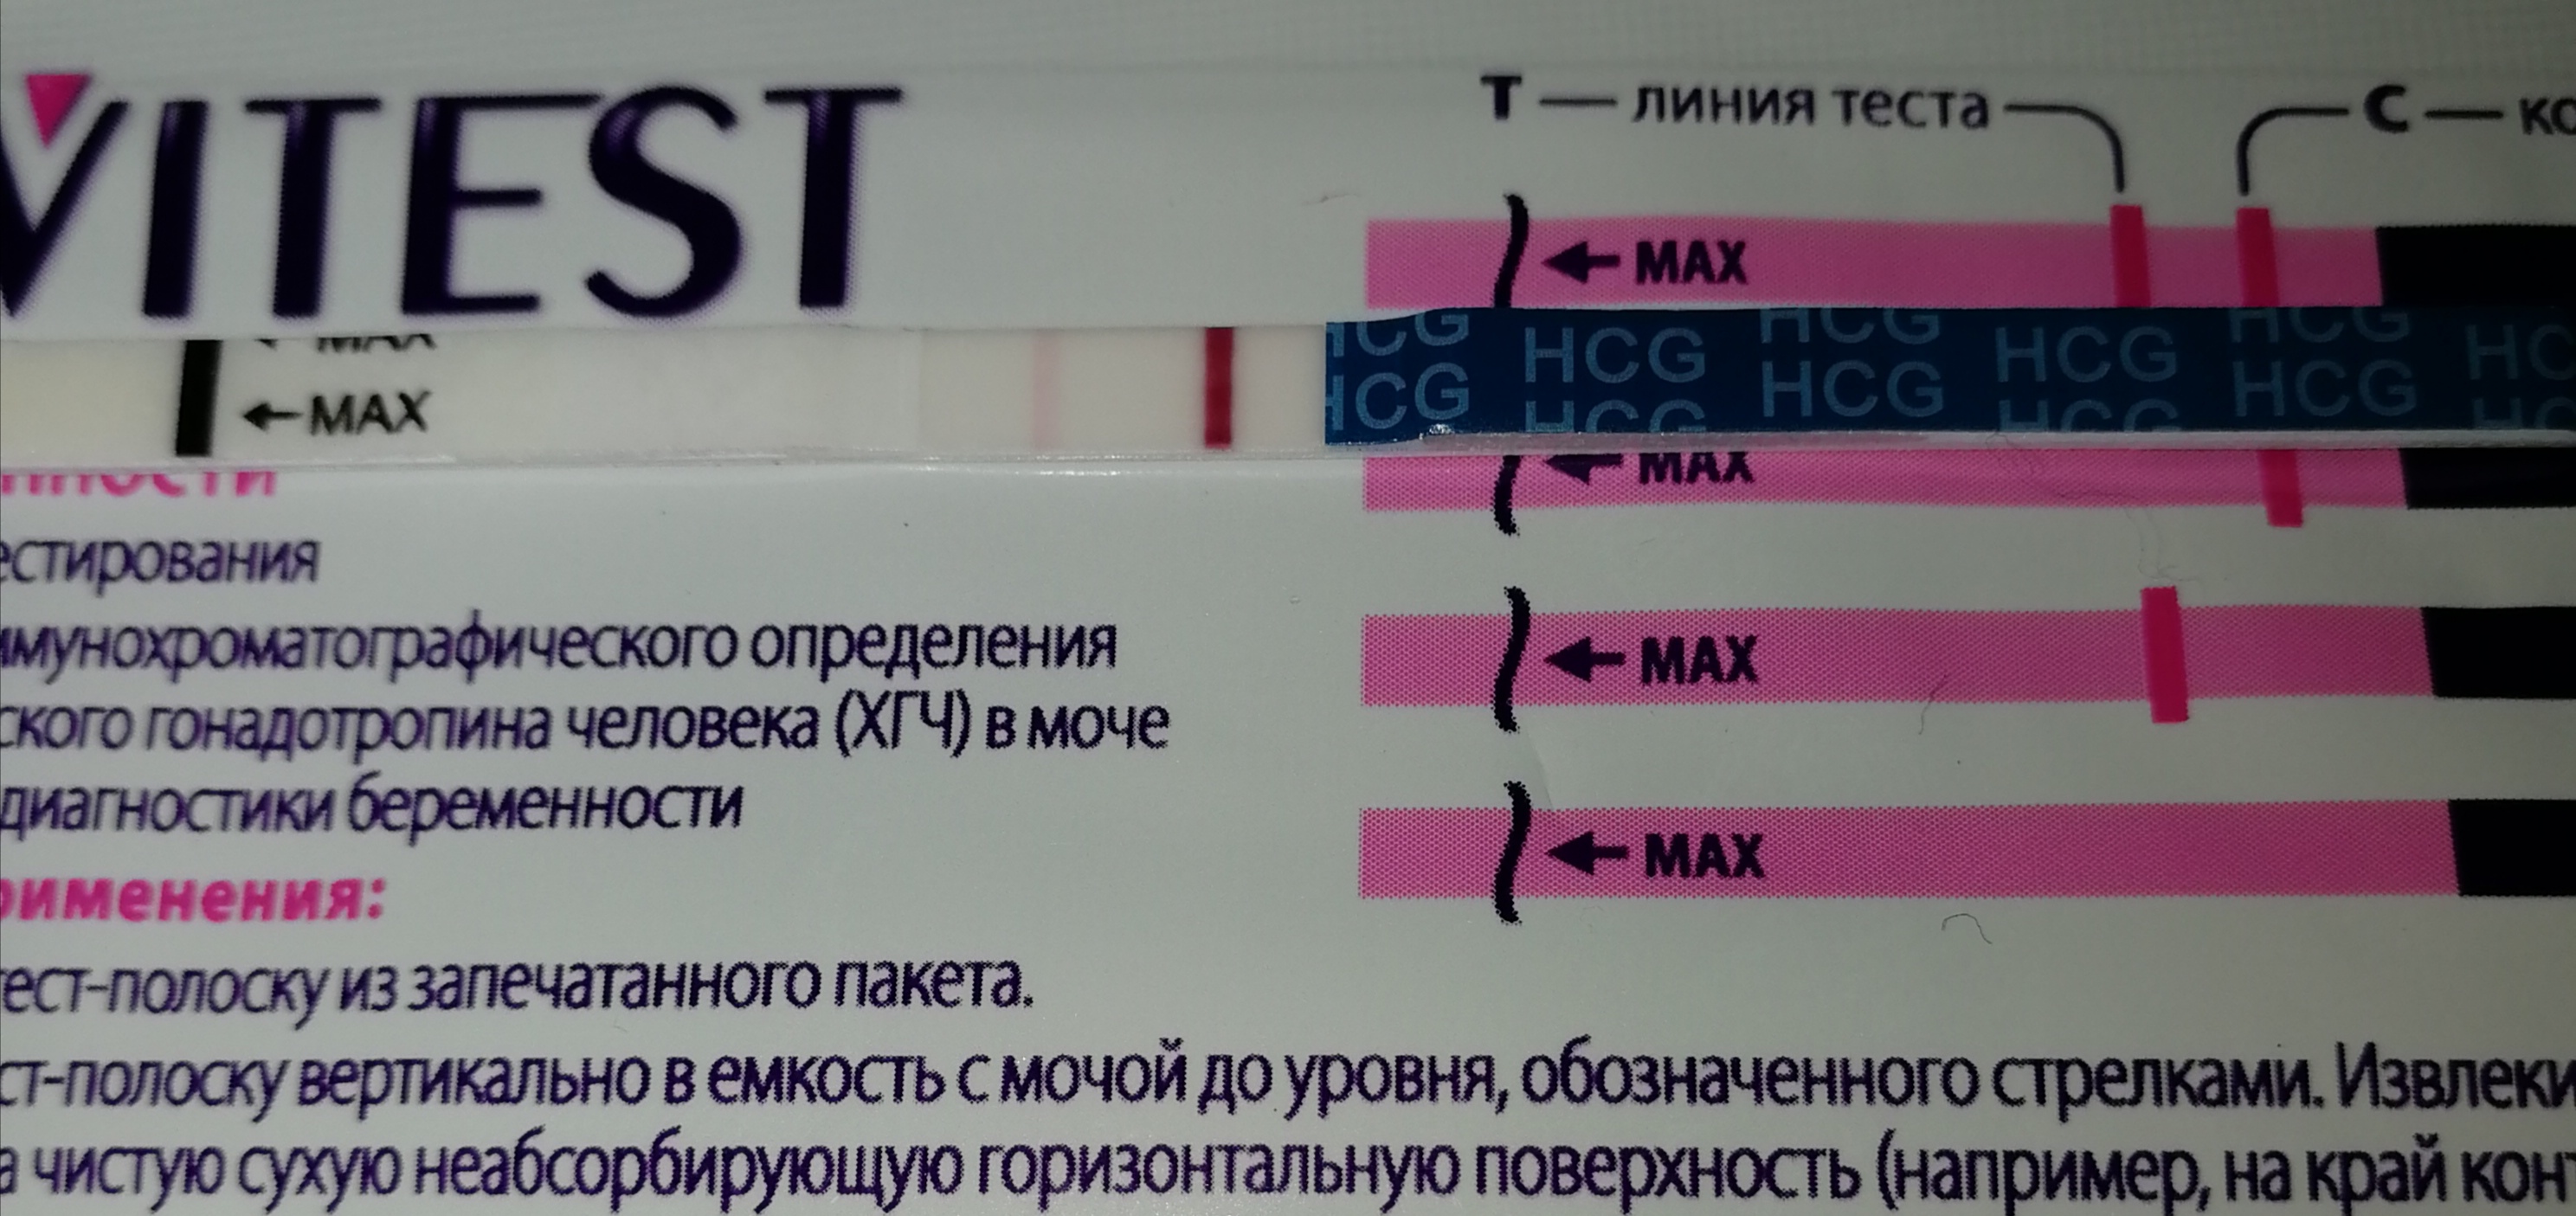 Через сколько можно сдать хгч. Тесты при ХГЧ. Результаты теста ХГЧ. ХГЧ тест на беременность. Тест на беременность и ХГЧ В крови.